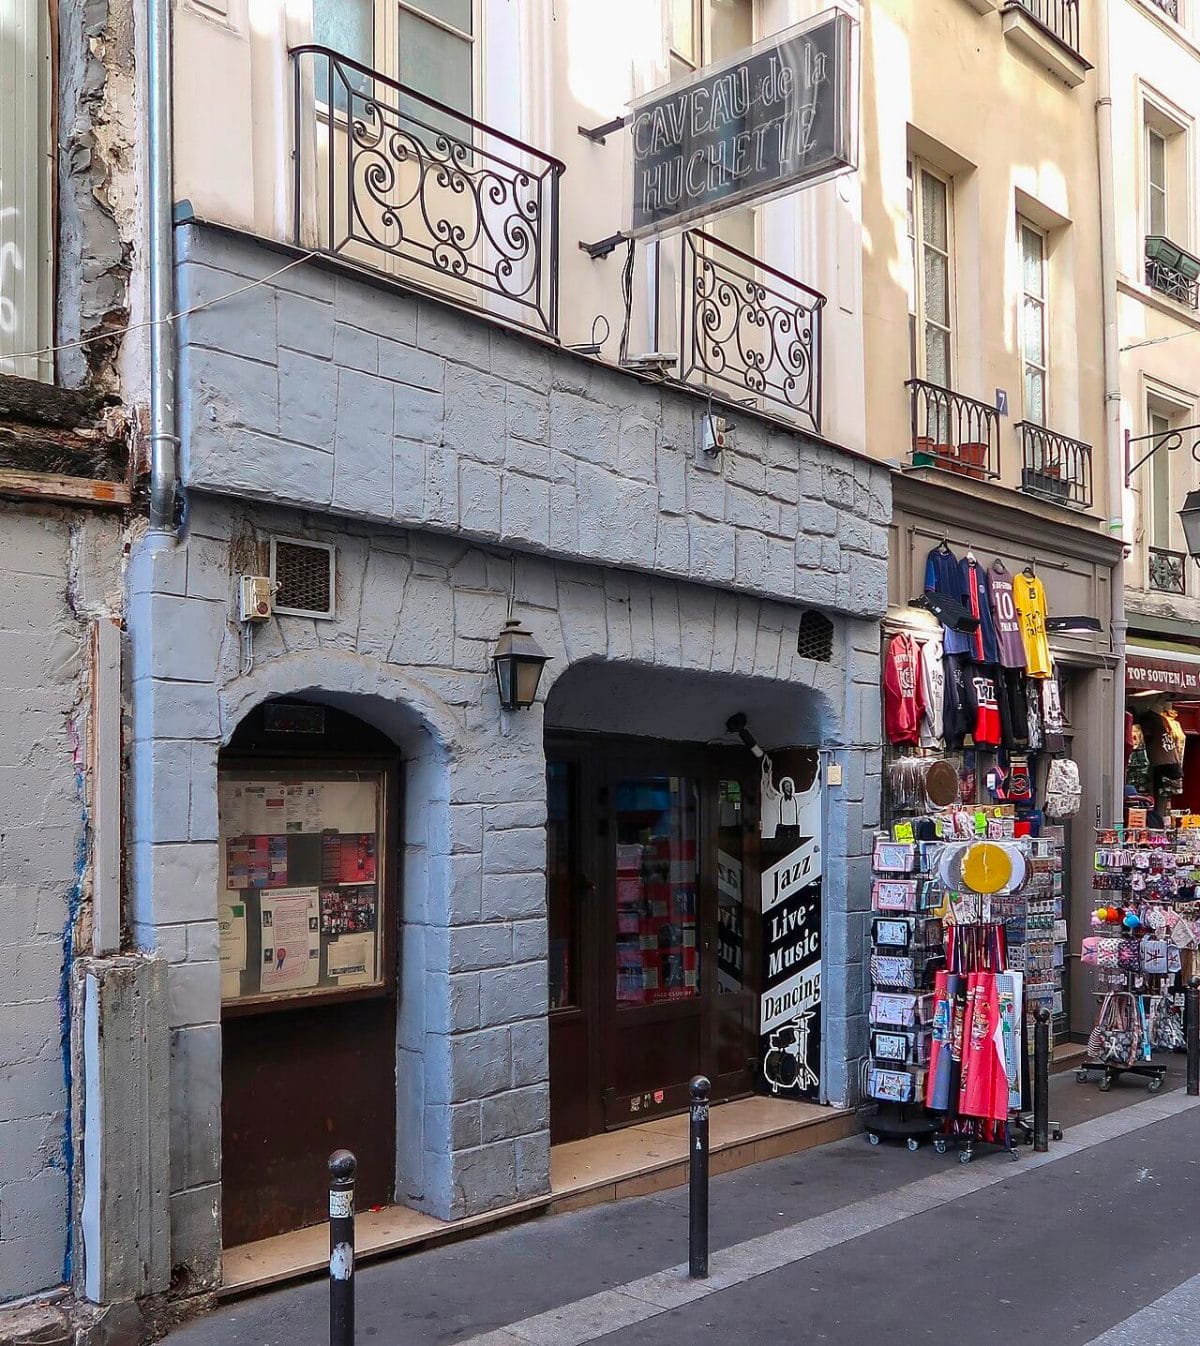 Caveau de la Huchette, 5 rue de la Huchette by Polymagou (CC BY-SA 4.0)